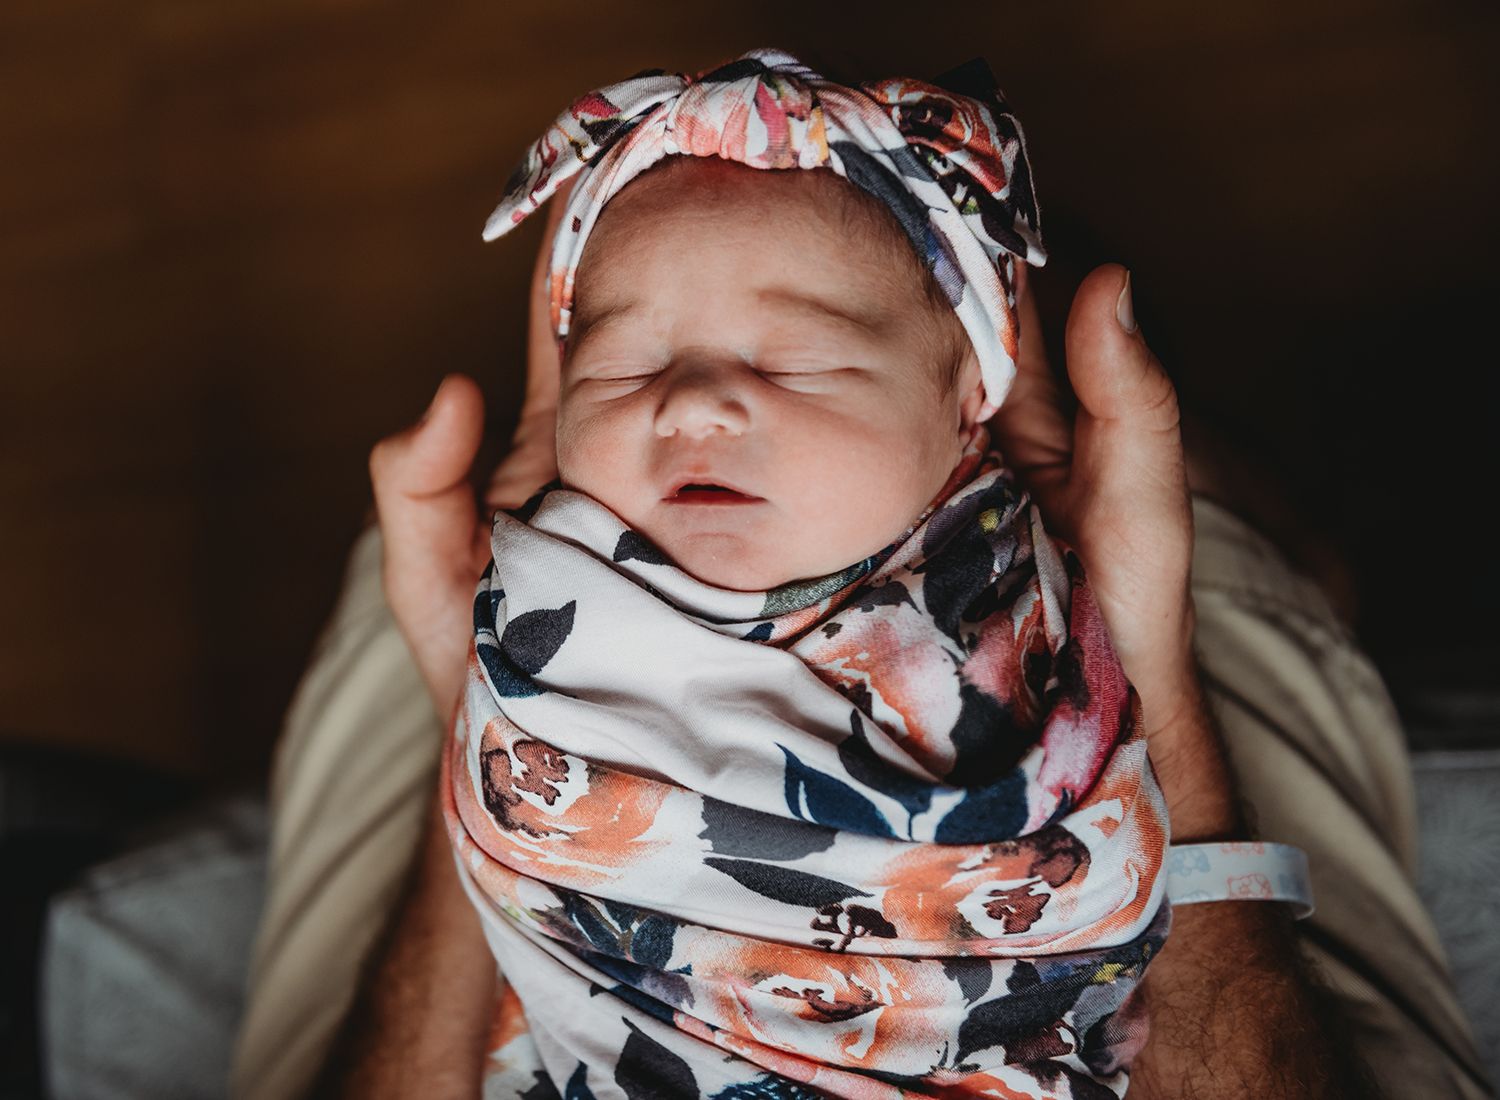 newborn baby sleeping in dads hands.jpg